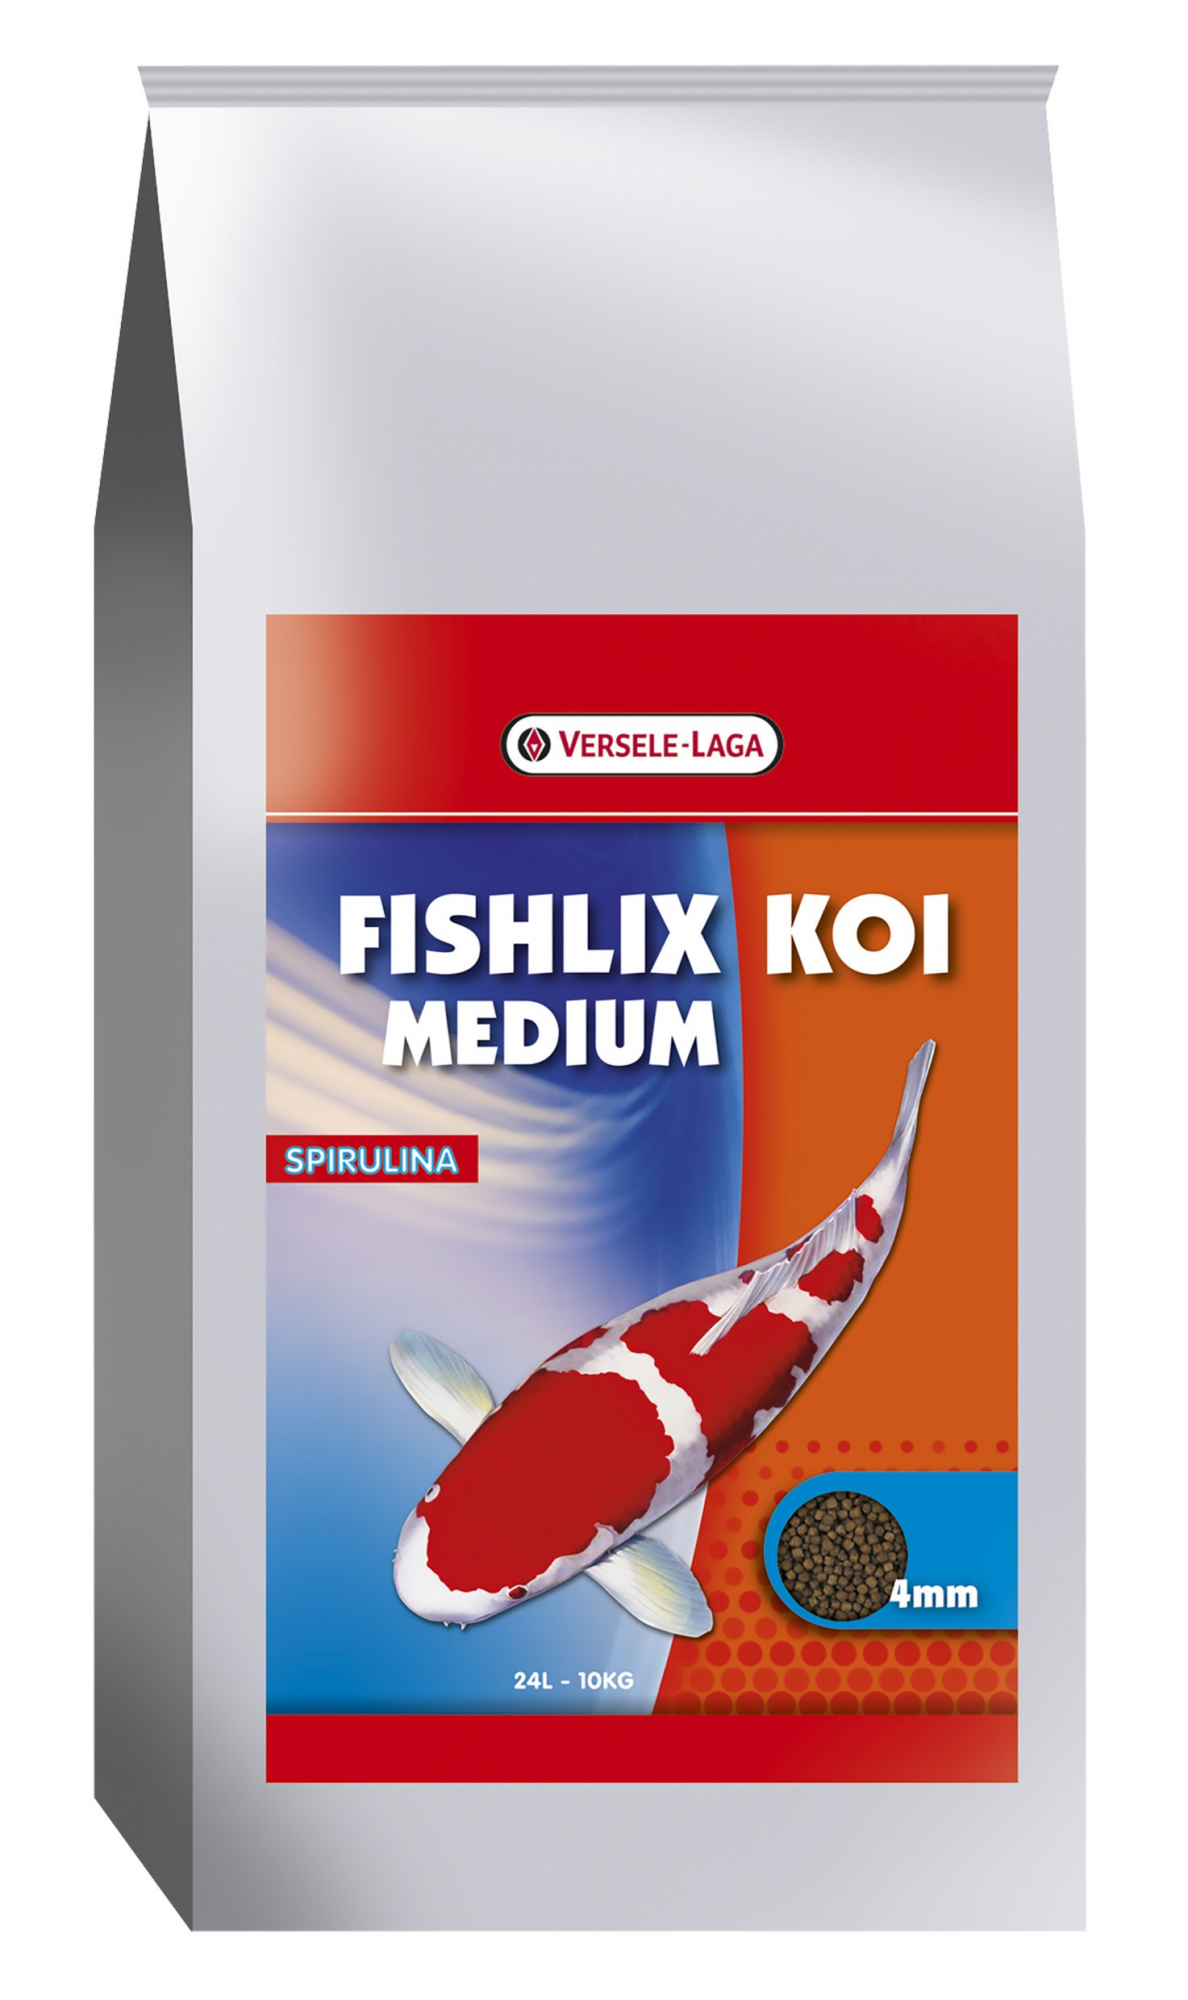 ishlix Koi Medium 4 mm - schwimmende Granulate für Kois